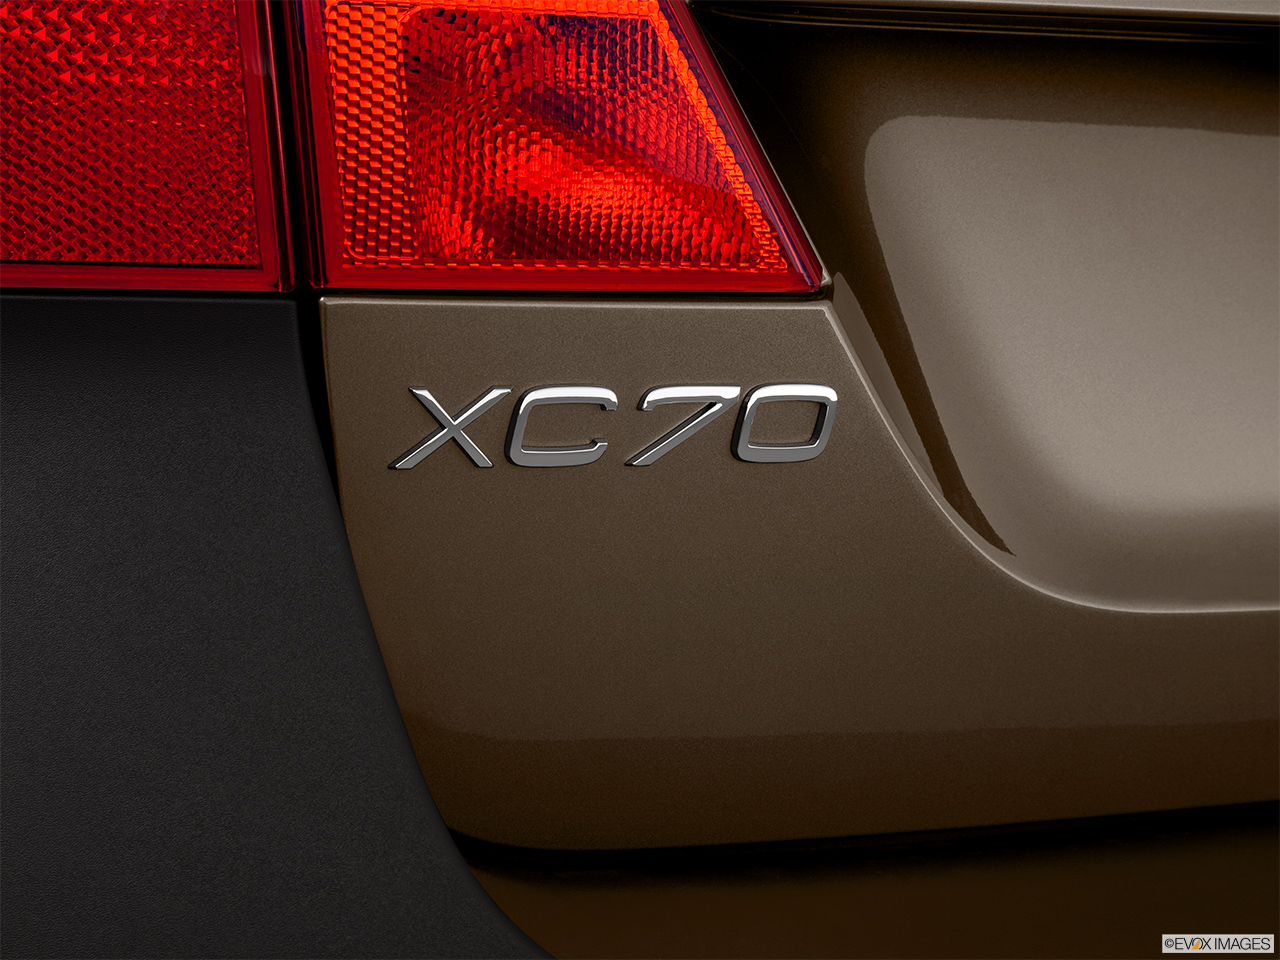 2012 Volvo XC70 3.2L Rear model badge/emblem 